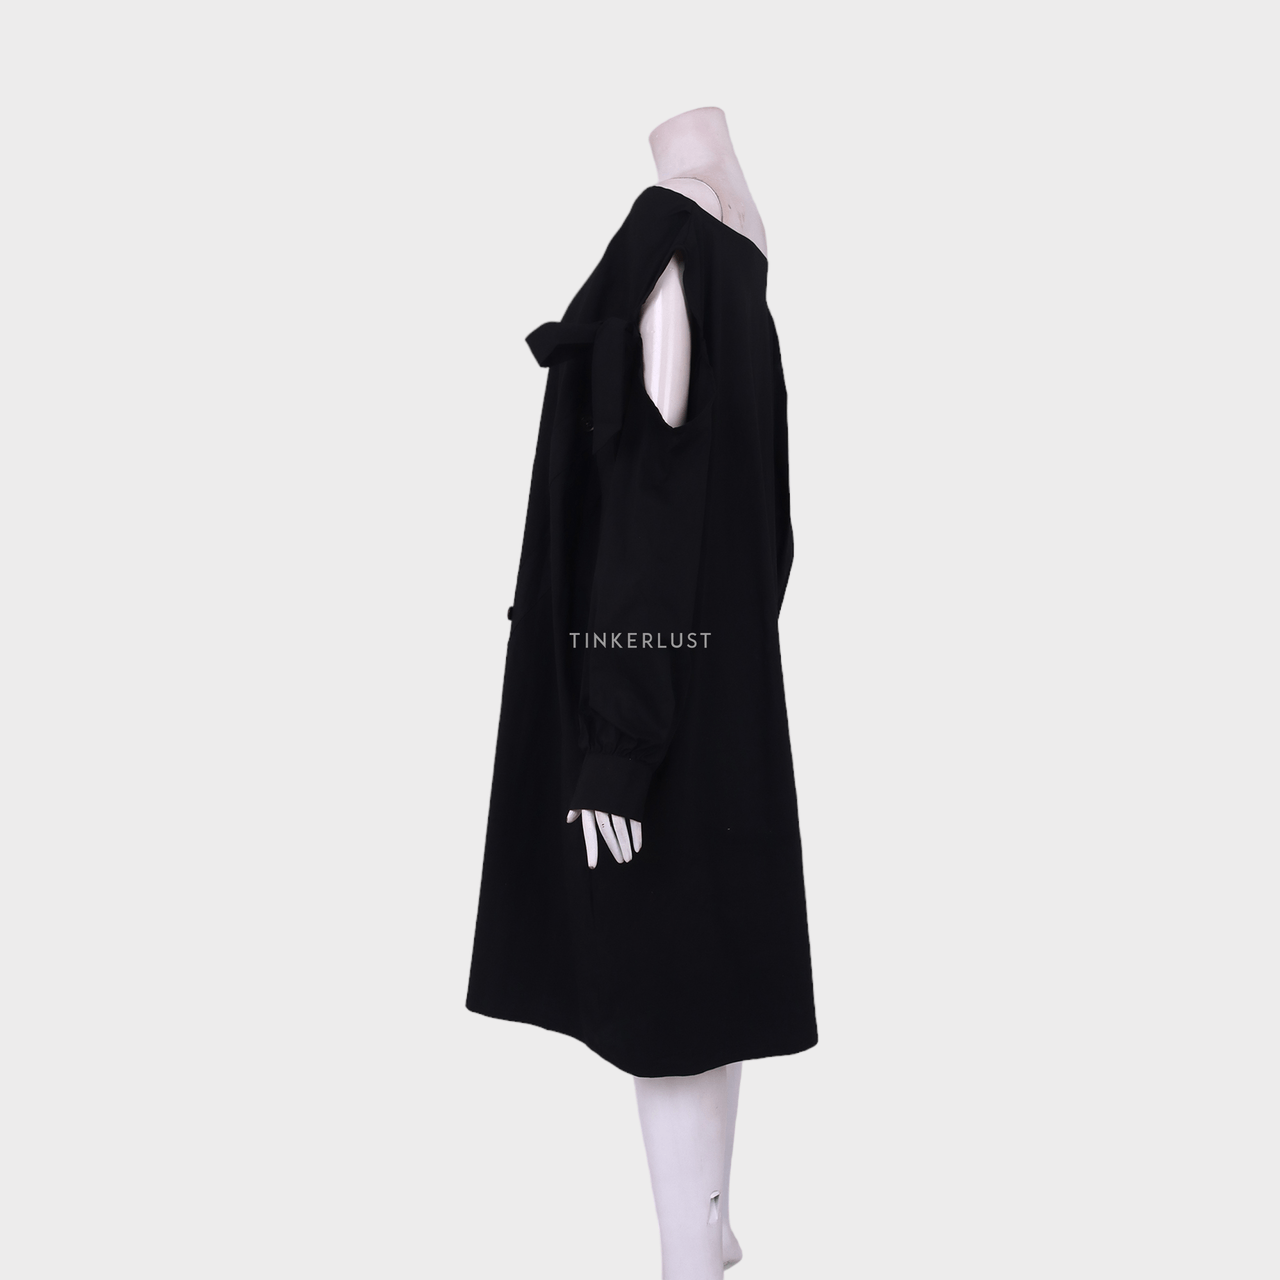 Private Collection Black Midi Dress